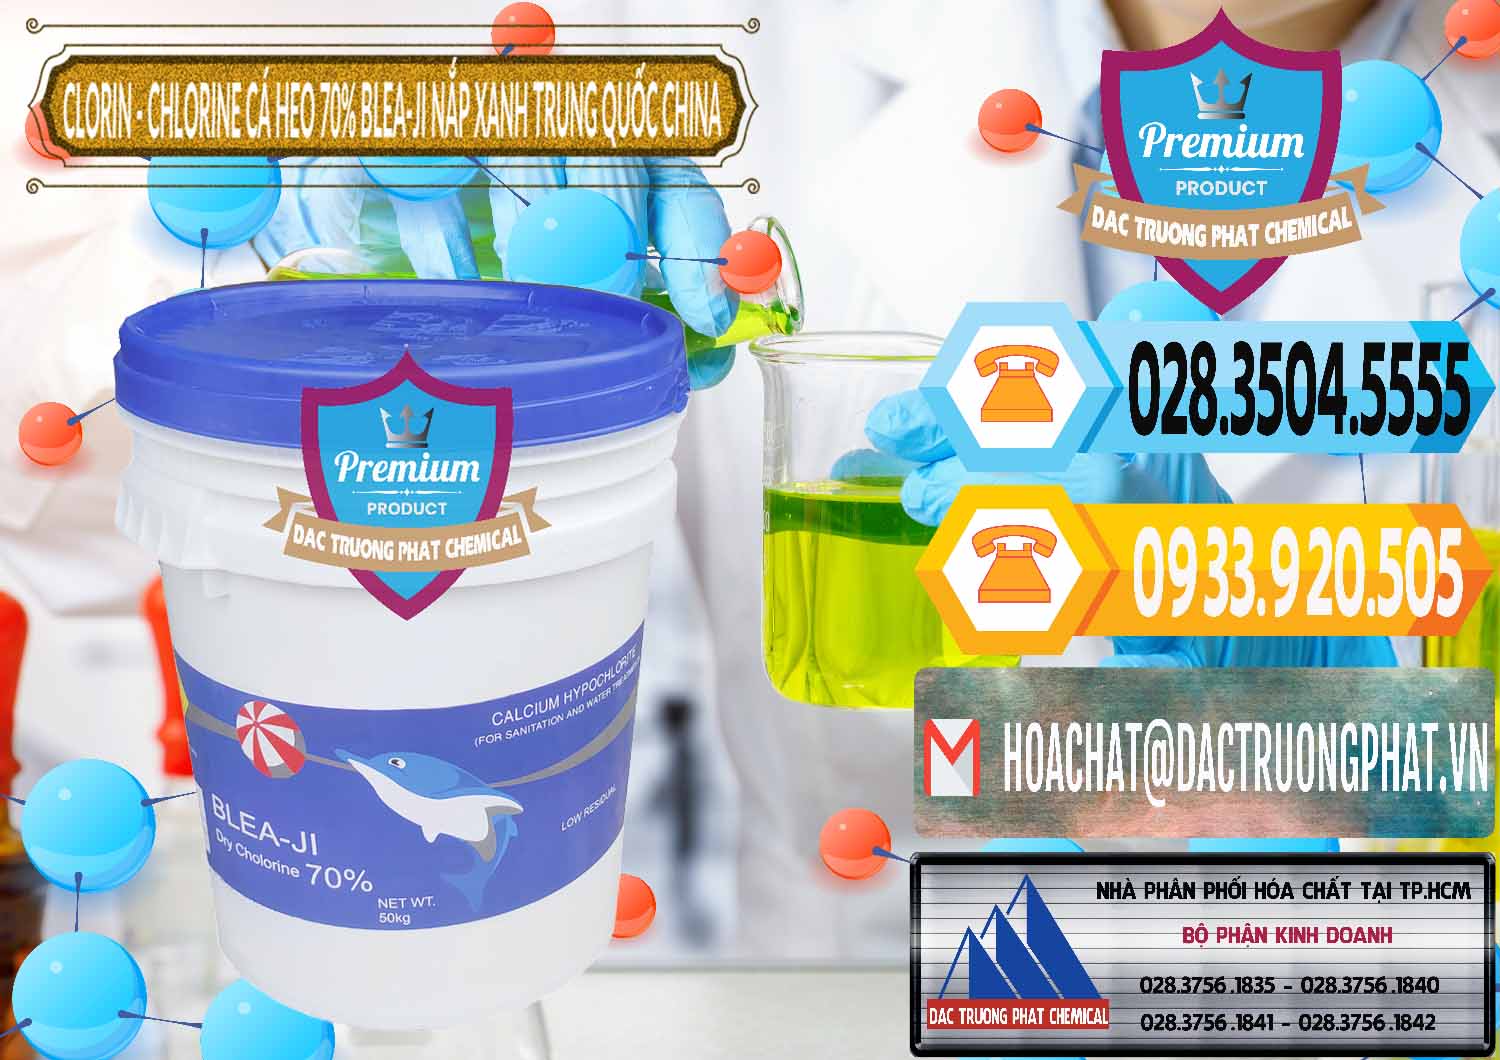 Công ty chuyên cung ứng ( bán ) Clorin - Chlorine Cá Heo 70% Cá Heo Blea-Ji Thùng Tròn Nắp Xanh Trung Quốc China - 0208 - Cty chuyên kinh doanh _ cung cấp hóa chất tại TP.HCM - hoachattayrua.net